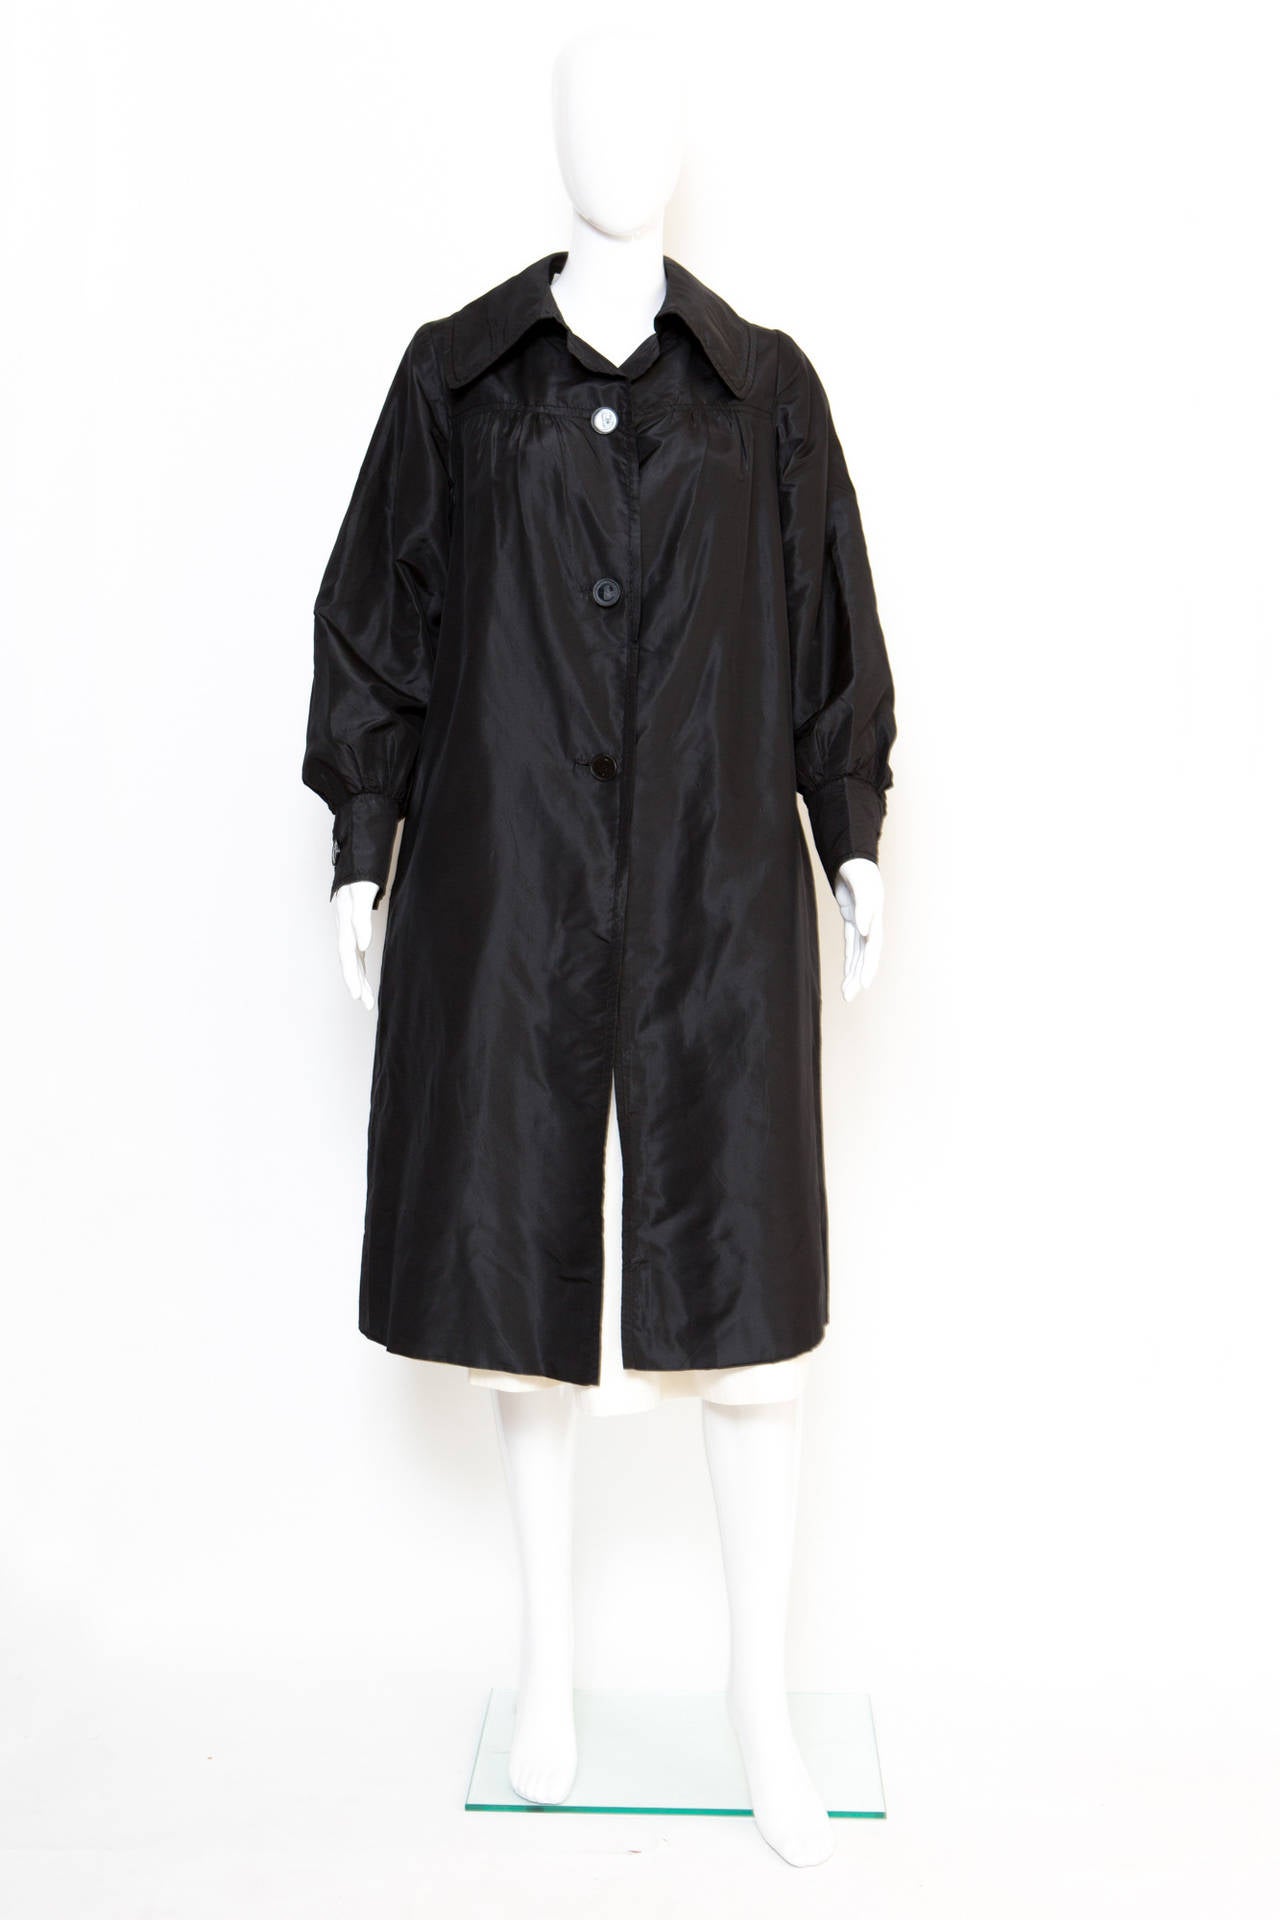 trench-coat en soie noire des années 1960 de Carven, avec un col classique, des manches longues, des poignets à boutons logo, des poches latérales et une fermeture à boutons sur le devant avec des boutons logo. Ce trench est entièrement doublé.
En